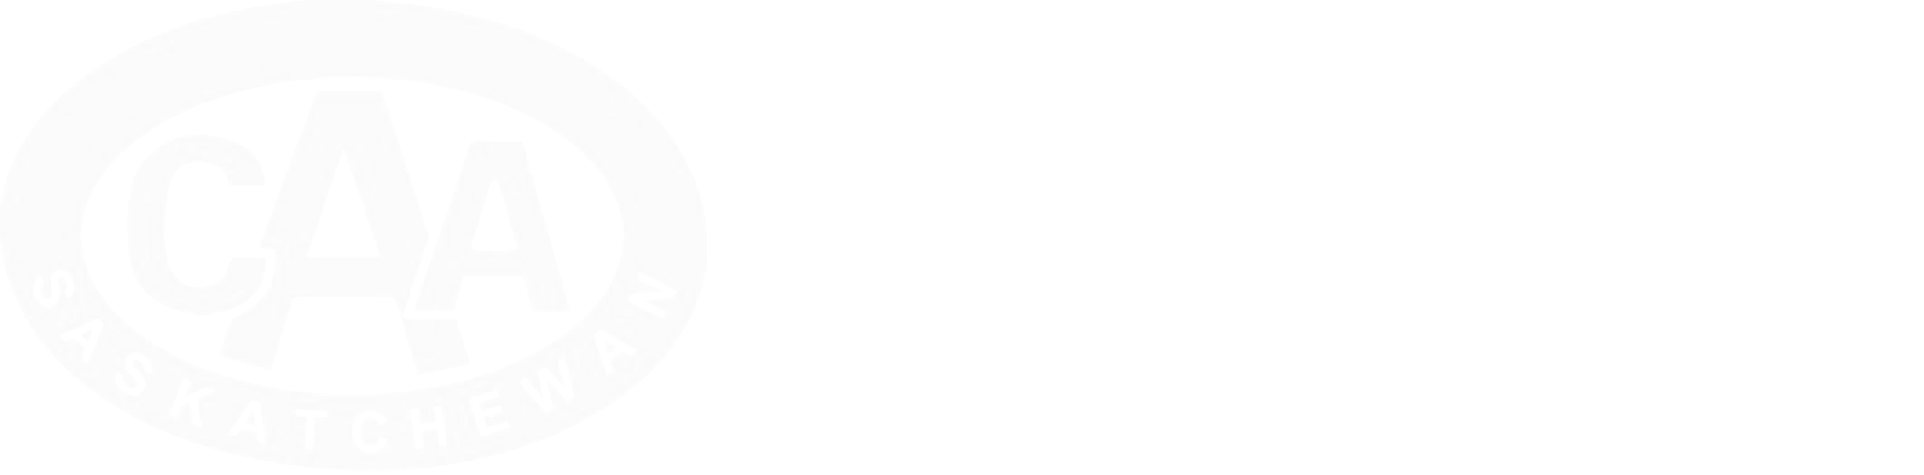 travel-insurance-logo-reverse